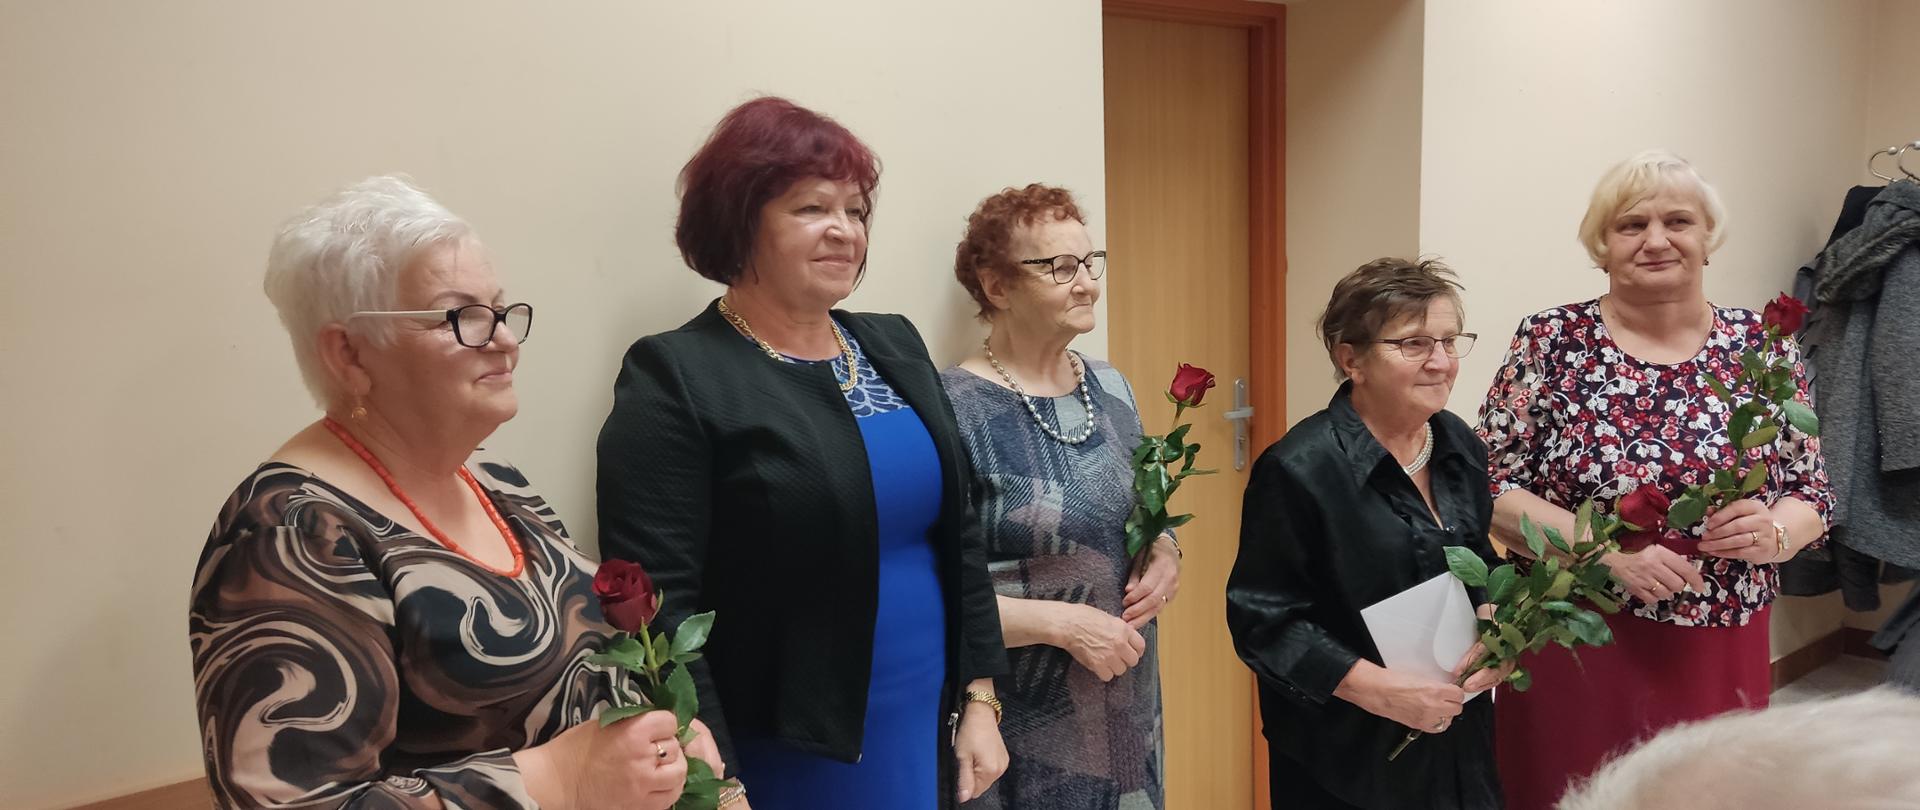 Na zdjęciu widać członkinie Koła Emerytów, Rencistów i Inwalidów w Sokołowie Budzyńskim wraz z Przewodniczącą, które otrzymały kwiaty oraz gratulacje z okazji obchodzonego jubileuszu. 